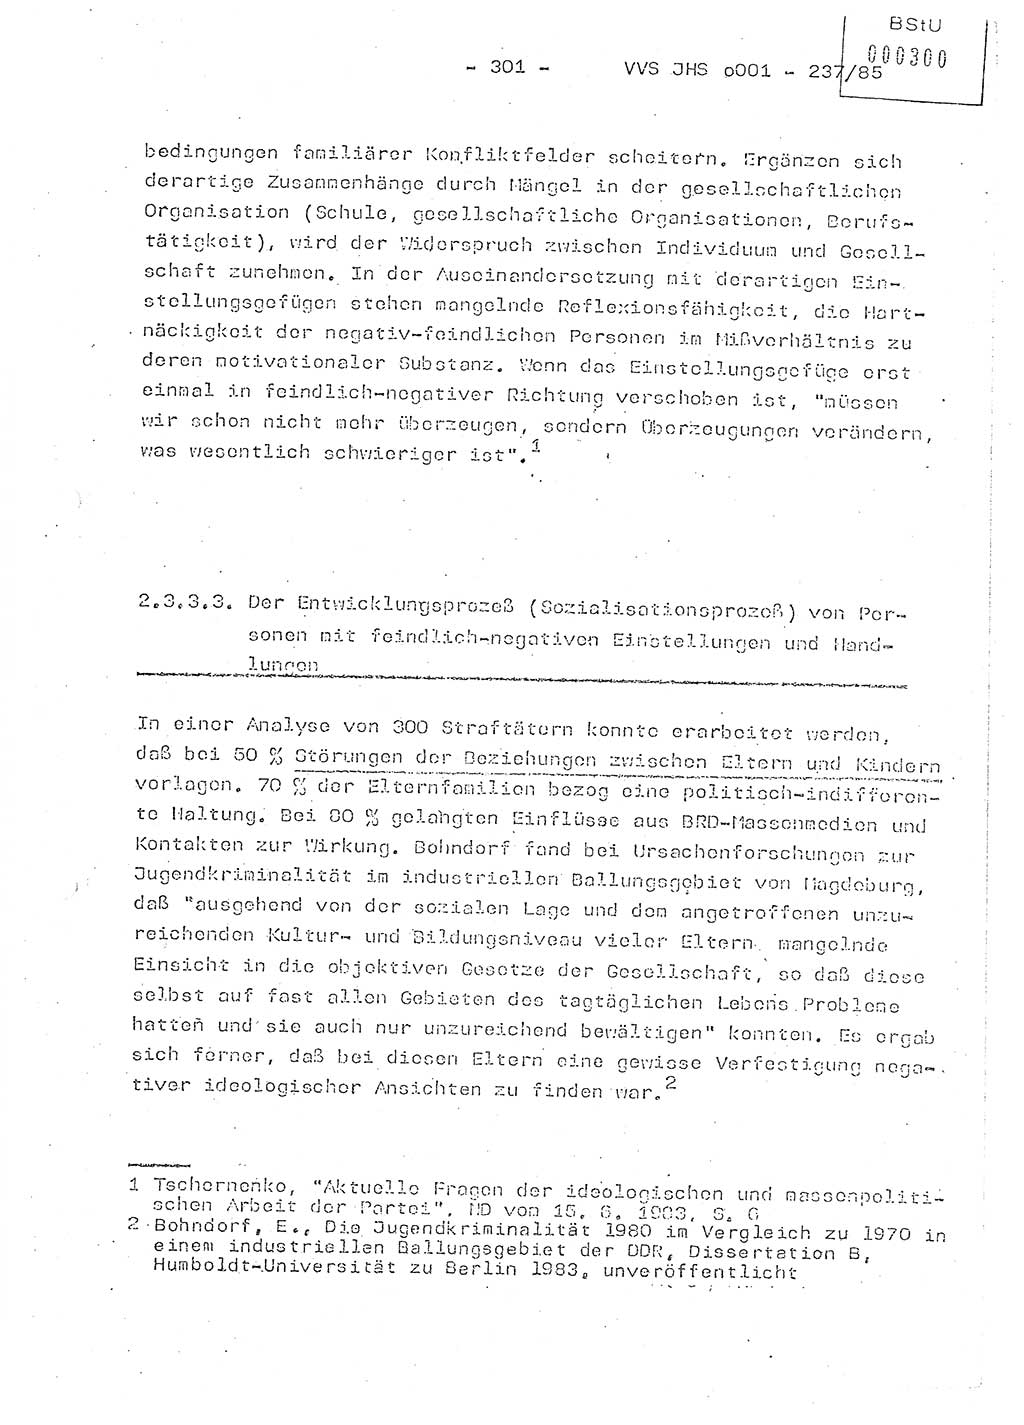 Dissertation Oberstleutnant Peter Jakulski (JHS), Oberstleutnat Christian Rudolph (HA Ⅸ), Major Horst Böttger (ZMD), Major Wolfgang Grüneberg (JHS), Major Albert Meutsch (JHS), Ministerium für Staatssicherheit (MfS) [Deutsche Demokratische Republik (DDR)], Juristische Hochschule (JHS), Vertrauliche Verschlußsache (VVS) o001-237/85, Potsdam 1985, Seite 301 (Diss. MfS DDR JHS VVS o001-237/85 1985, S. 301)